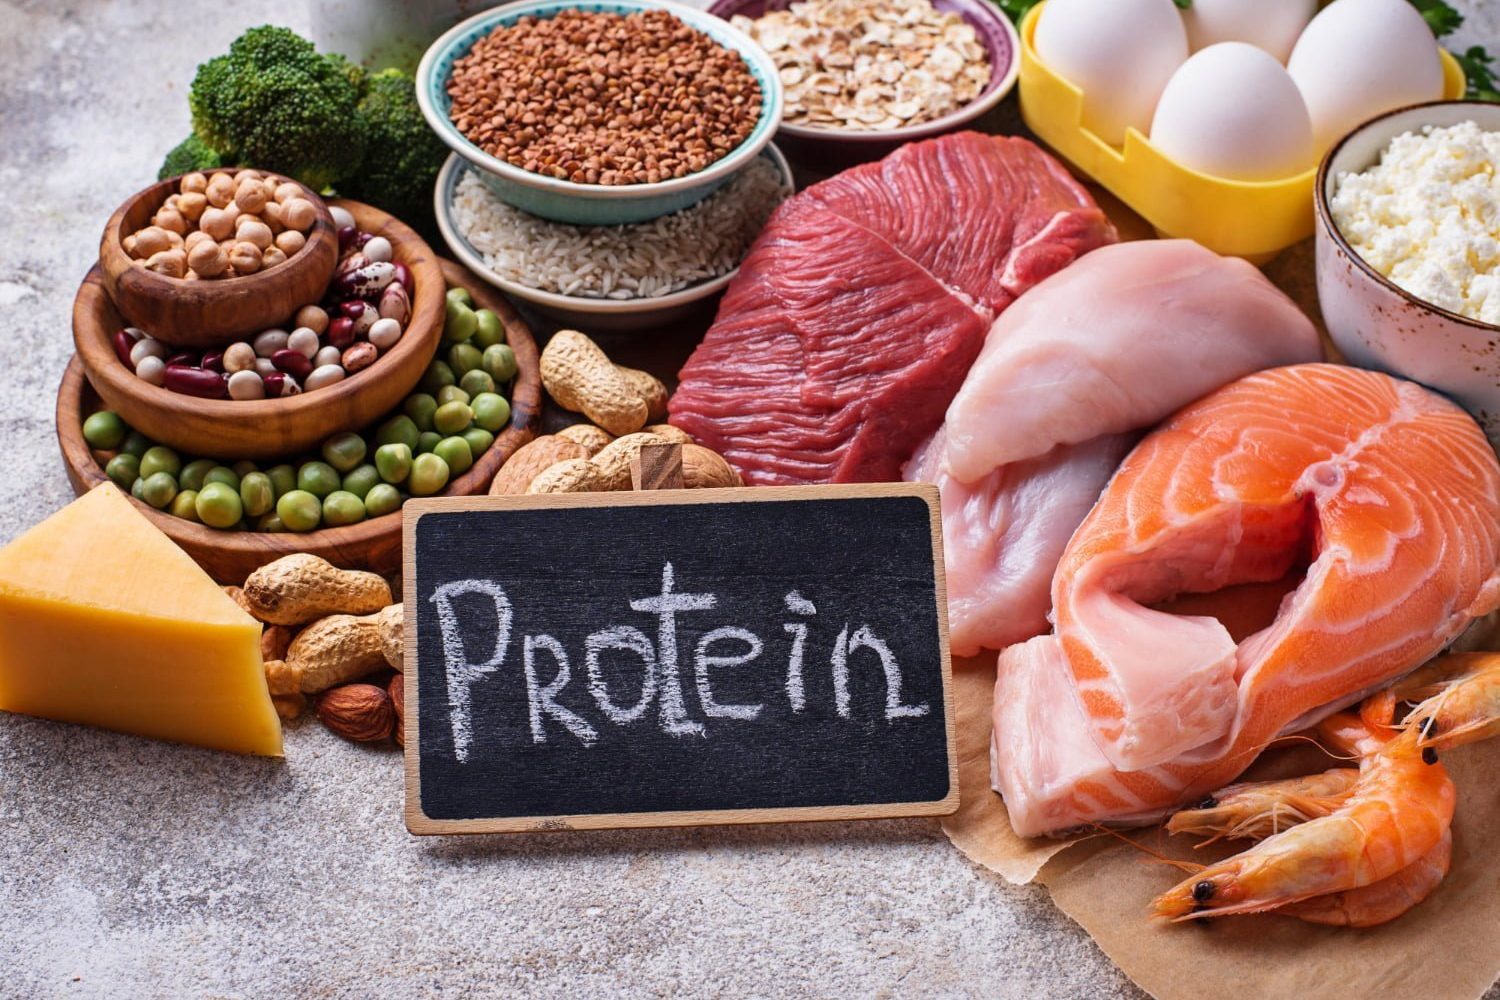 comer más proteínas / riñones - 10 alimentos ricos en proteínas para bajar de peso y ganar masa muscular